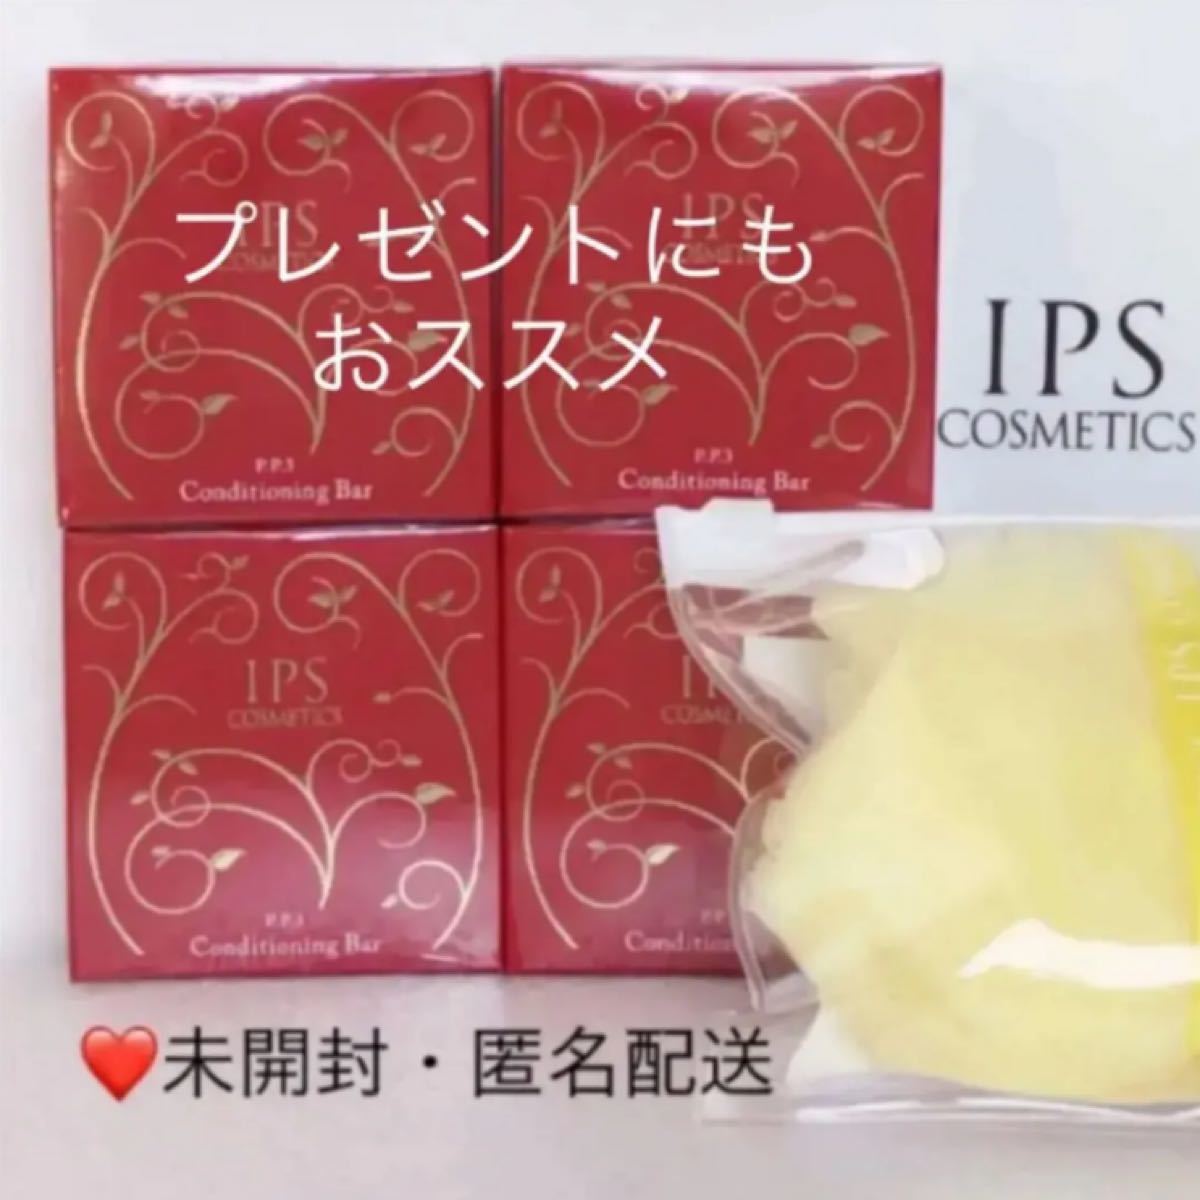 日本限定 IPSコスメティックス 化粧石鹸 泡立てネット付 ad-naturam.fr